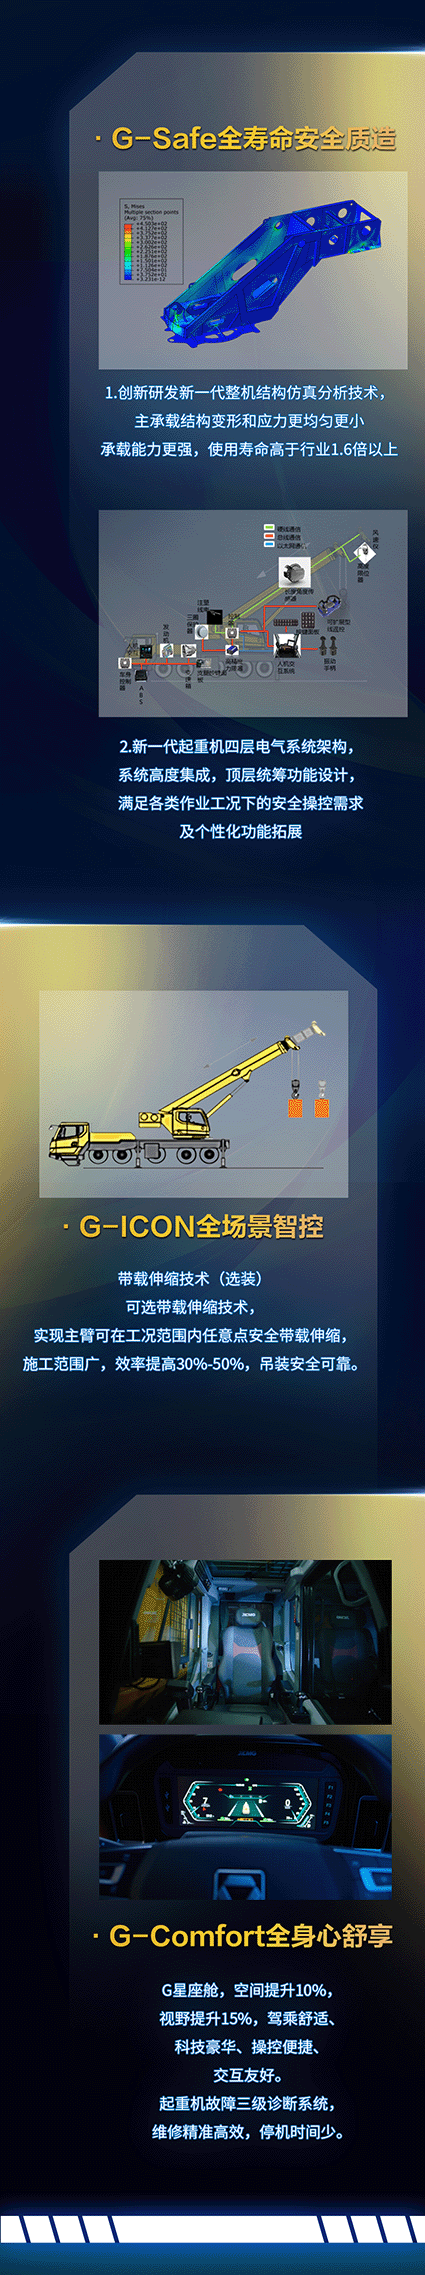 徐工G2代50吨明星产物——XCT50G5-1